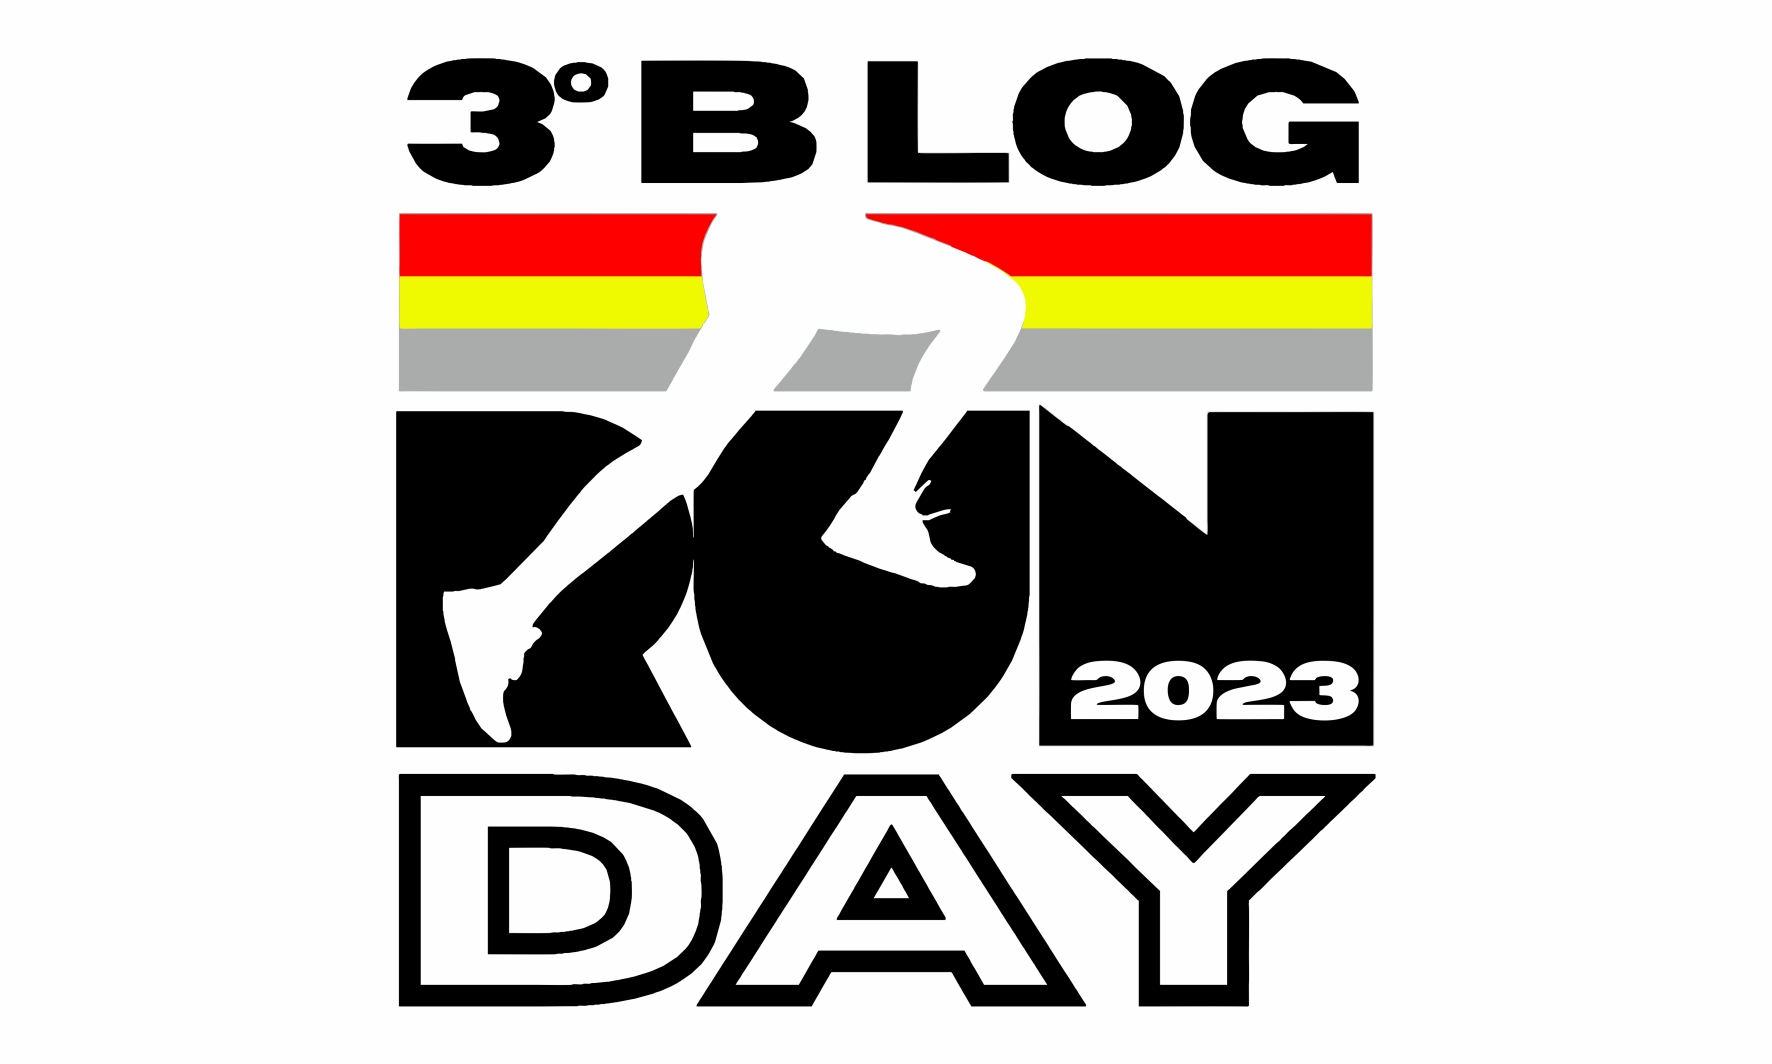 3º BLOG RUN DAY - 2023